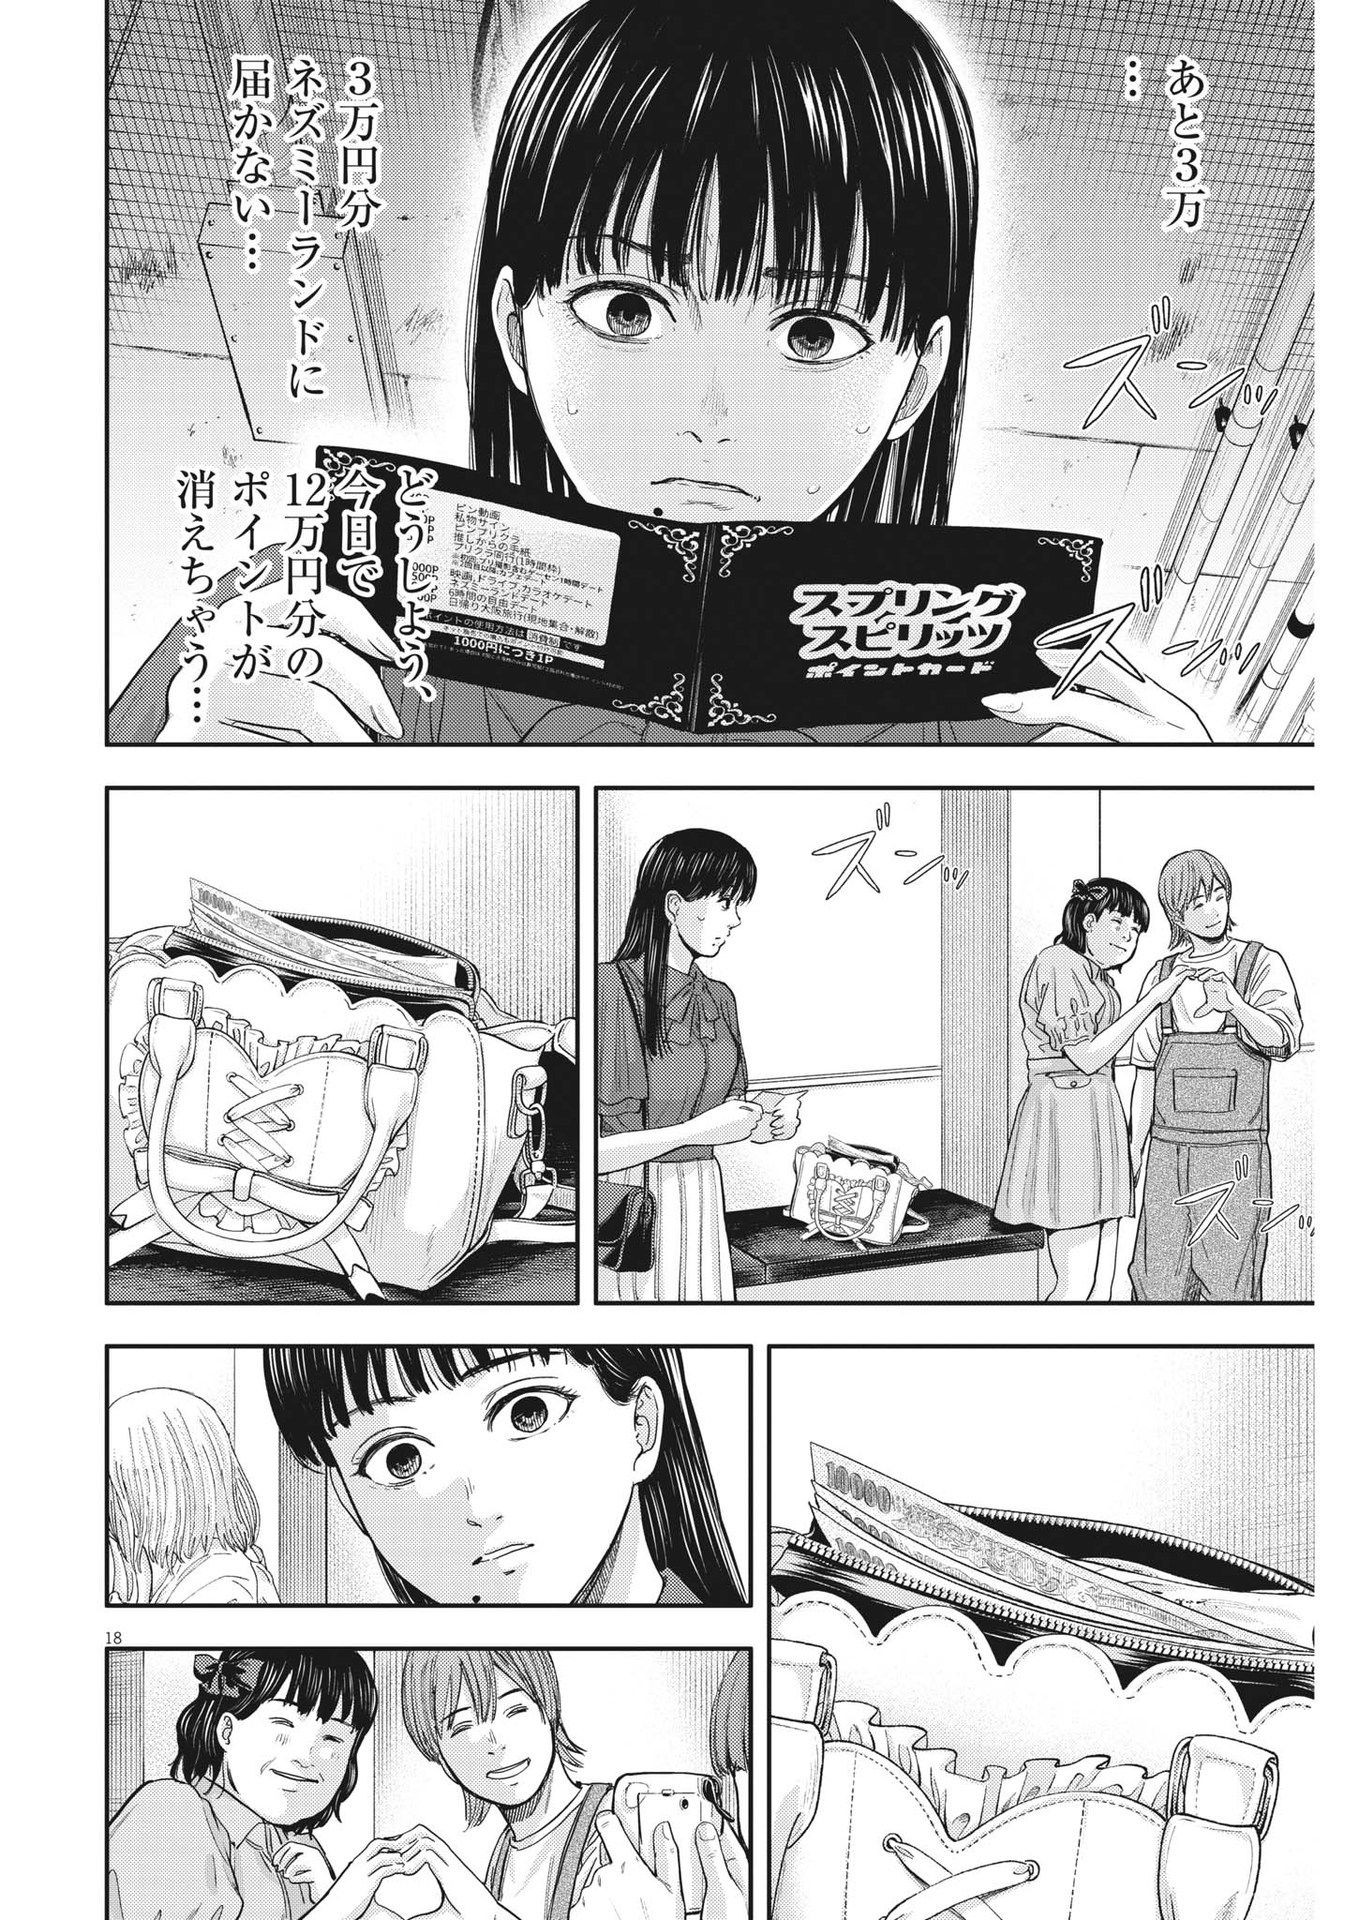 Yumenashi-sensei no Shinroshidou - Chapter 14 - Page 18